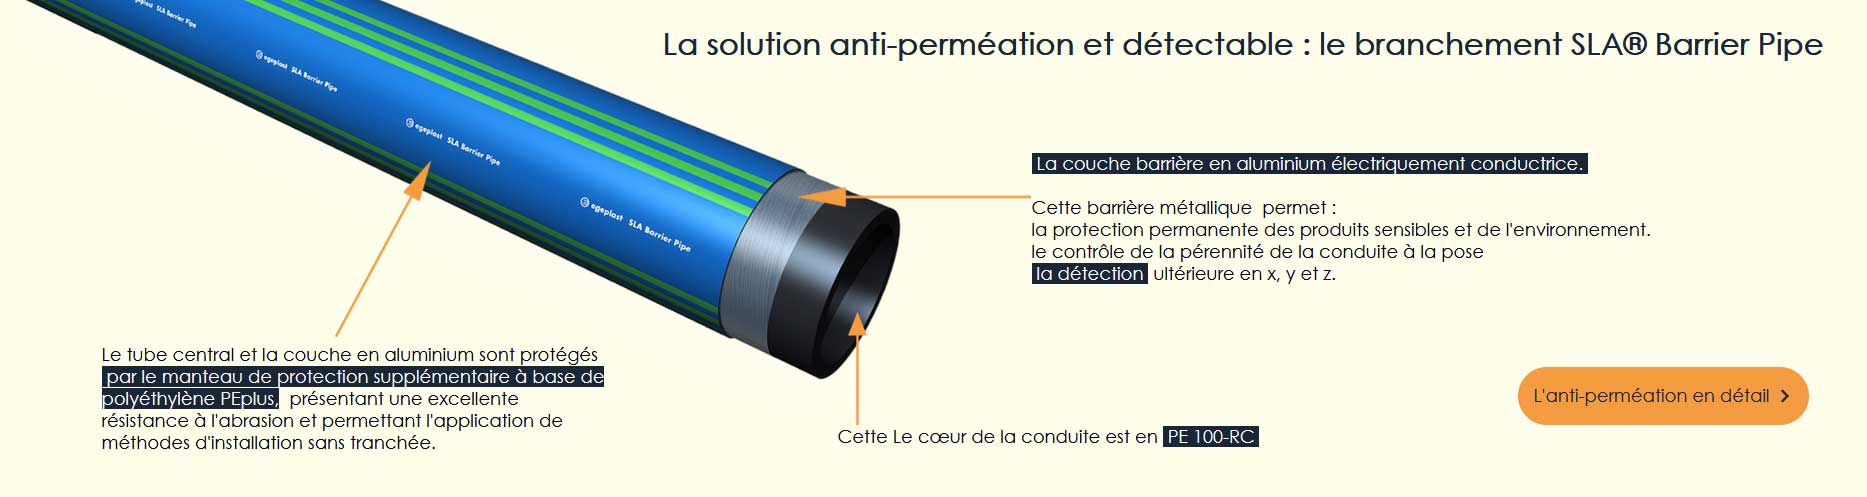 La solution anti-perméation et détectable : le branchement SLA® Barrier Pipe